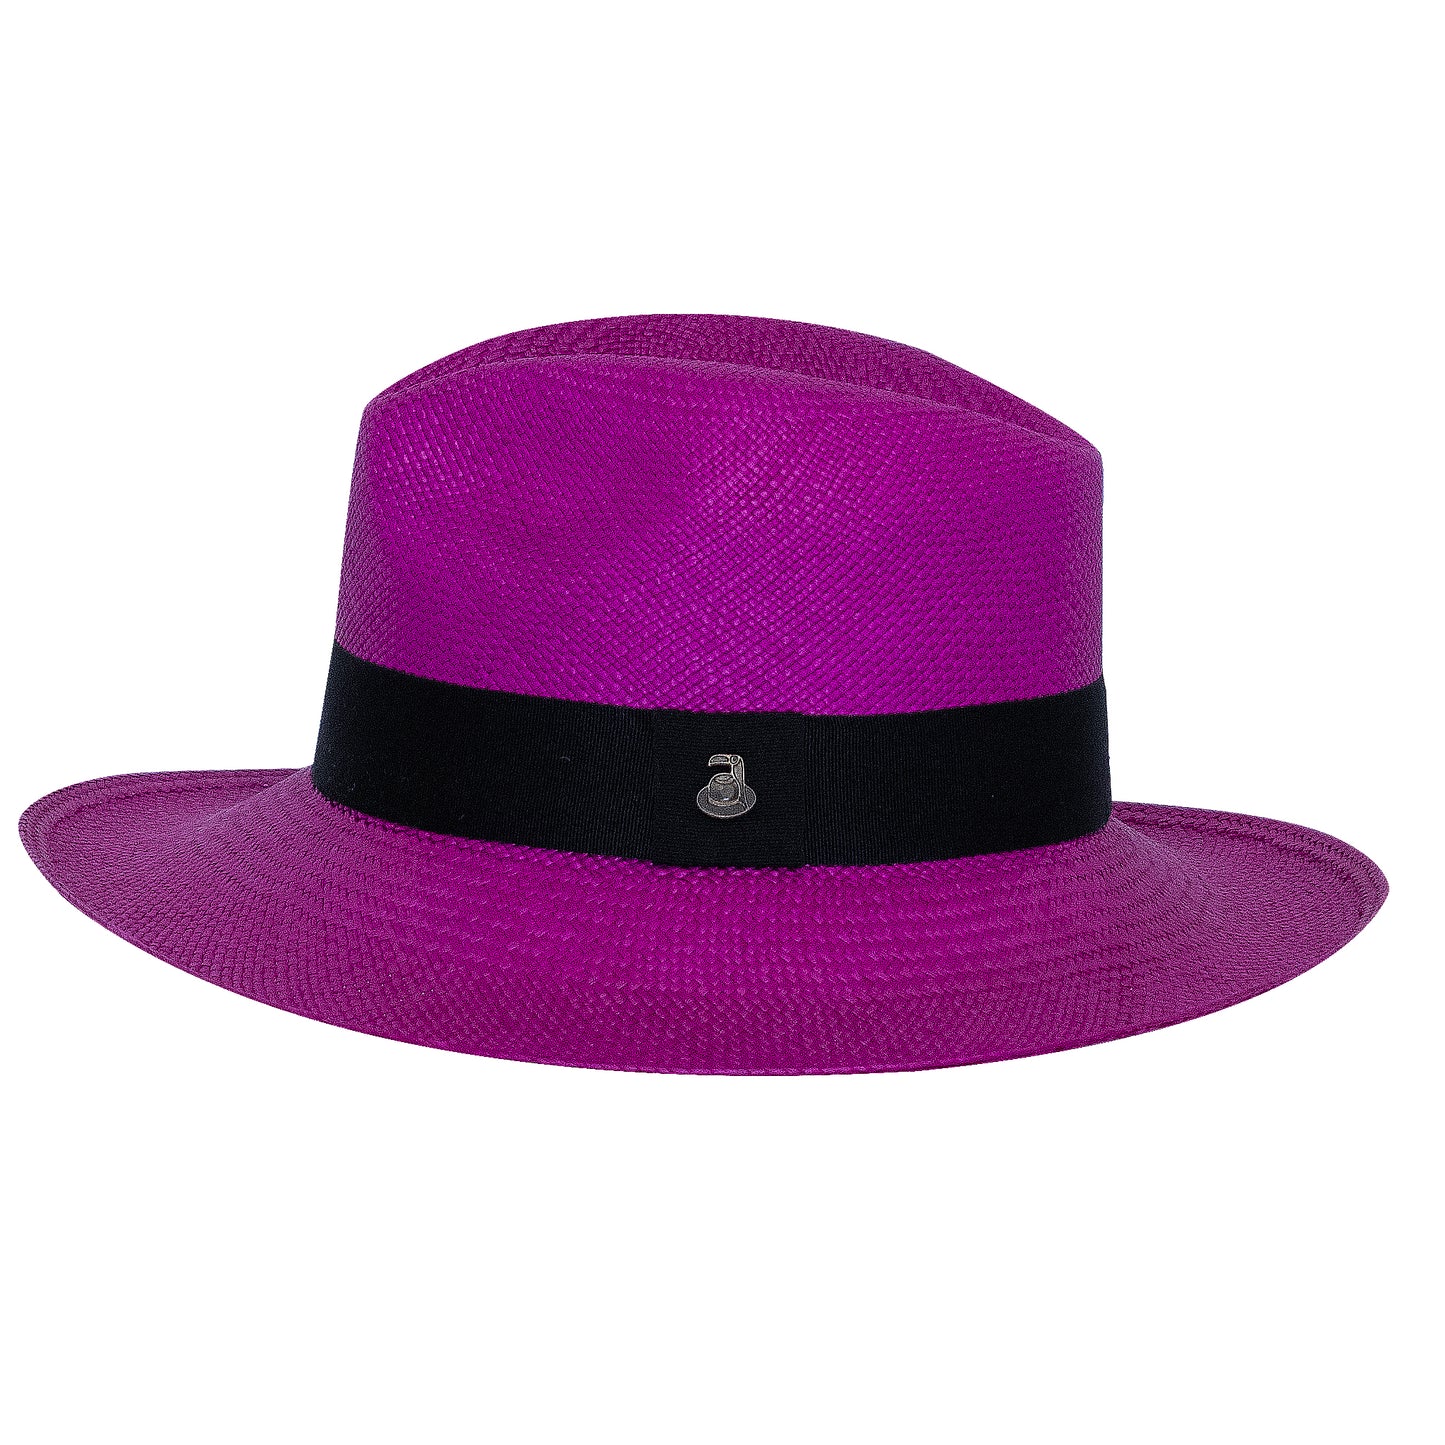 Ladies Panama Hat in Purple